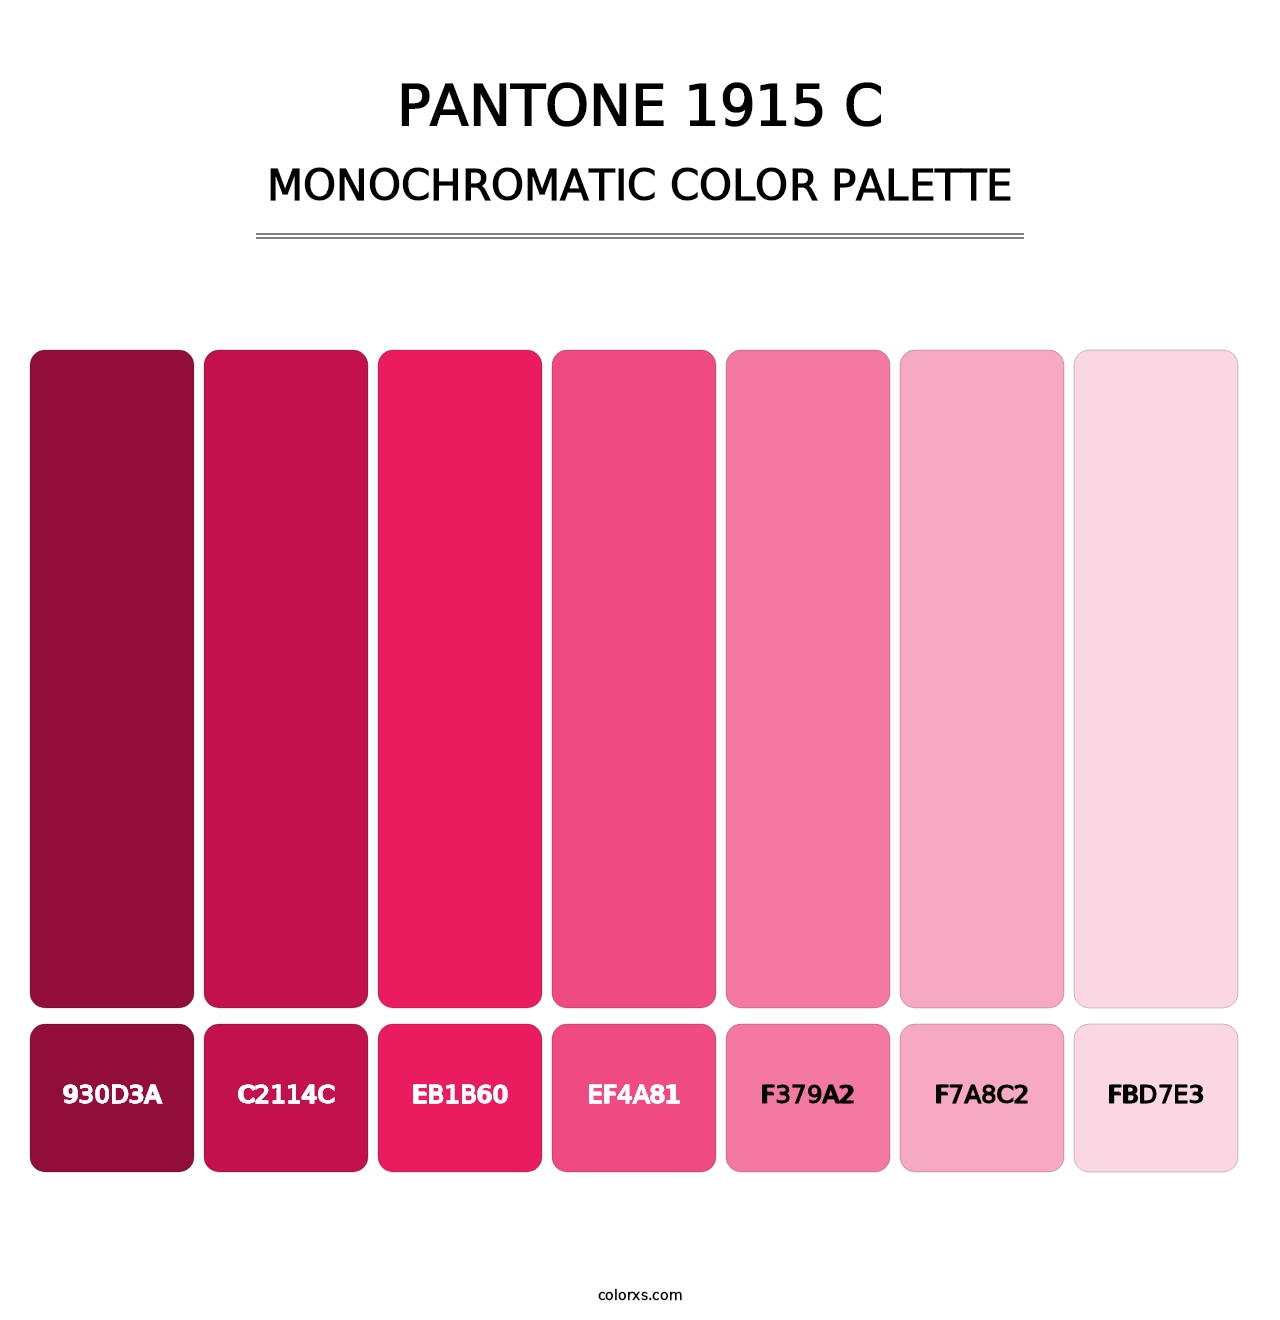 PANTONE 1915 C - Monochromatic Color Palette